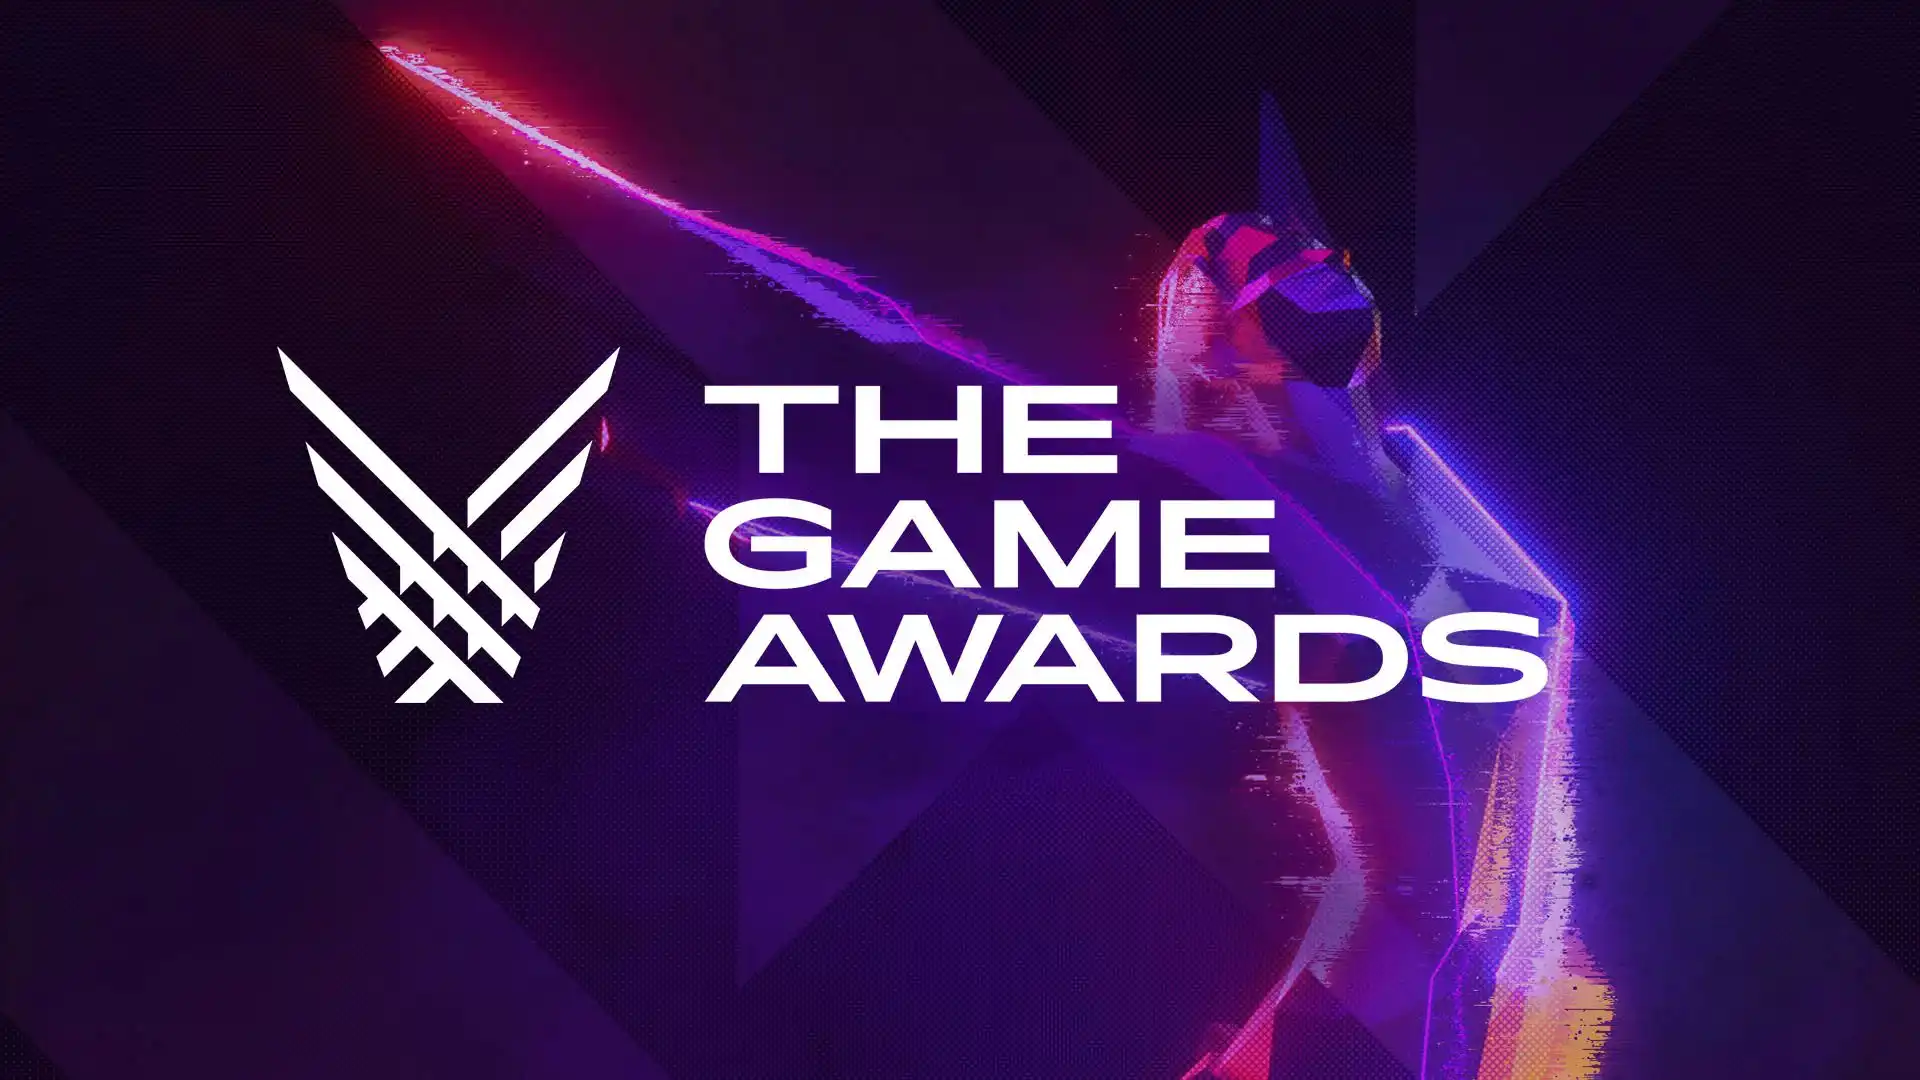 مراسم گیم اواردز Game Awards 2021